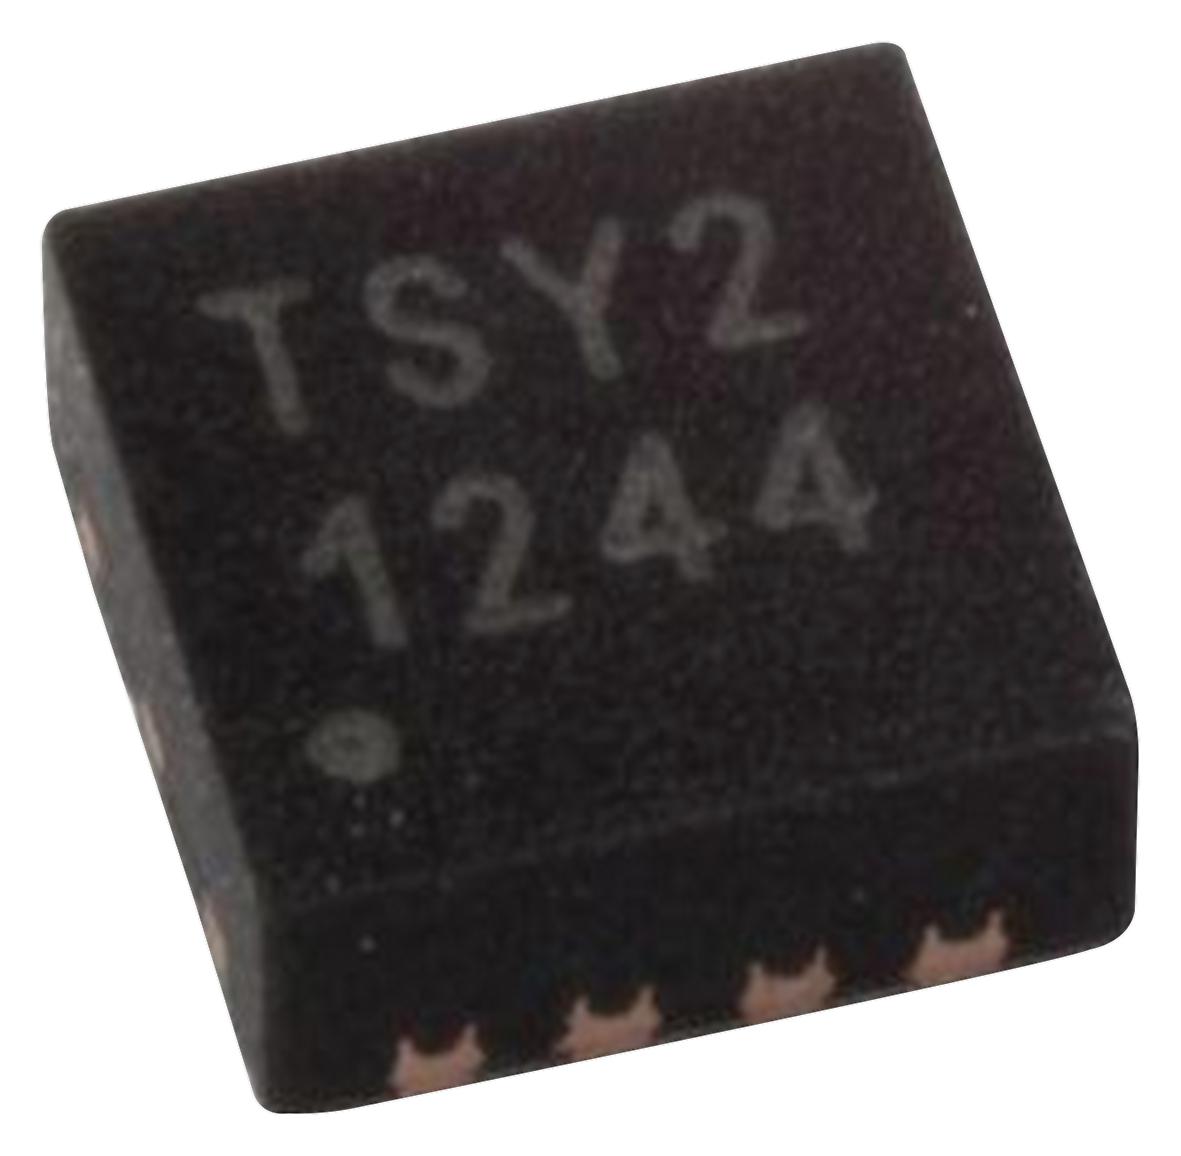 TSYS02D TEMPERATURE SENSOR, 1DEG C, TDFN-8 TE CONNECTIVITY